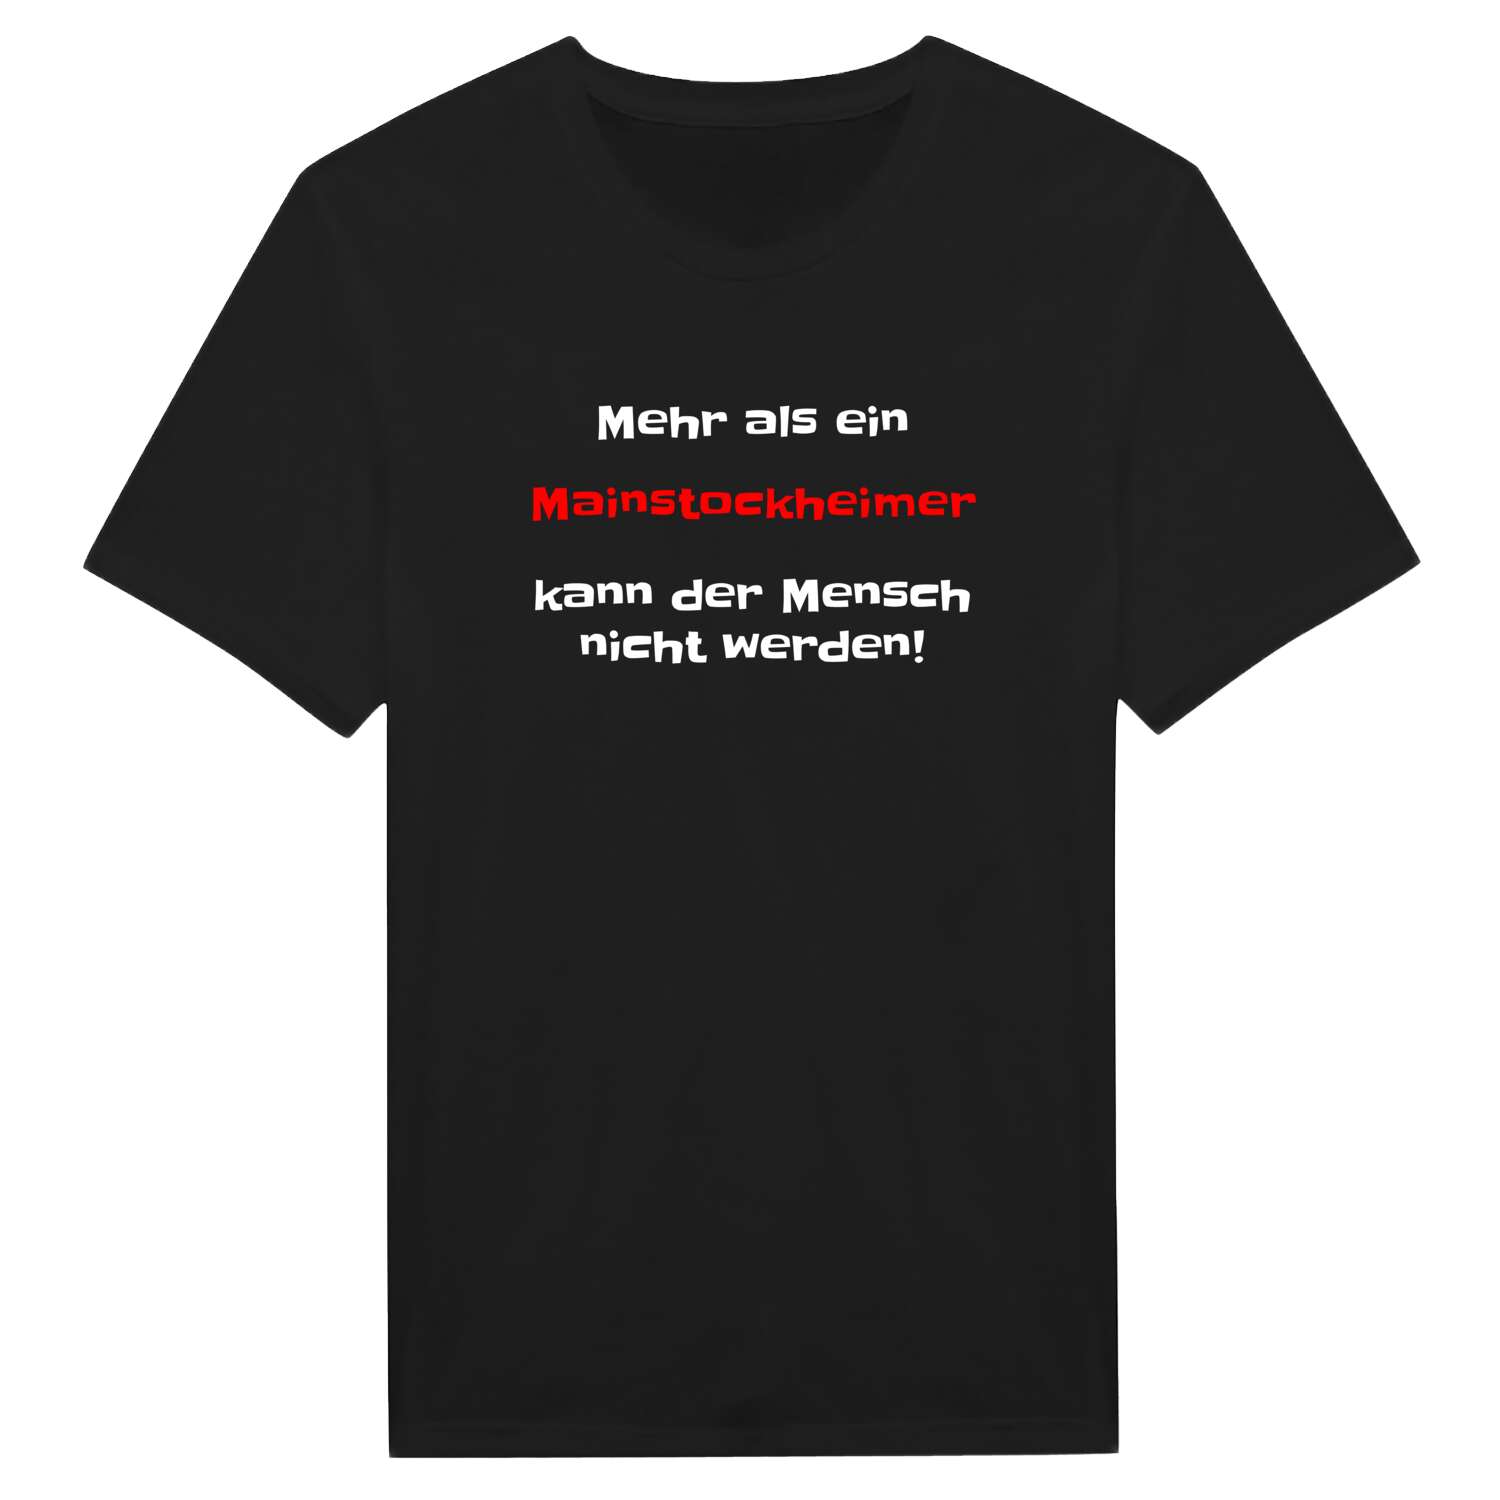 Mainstockheim T-Shirt »Mehr als ein«